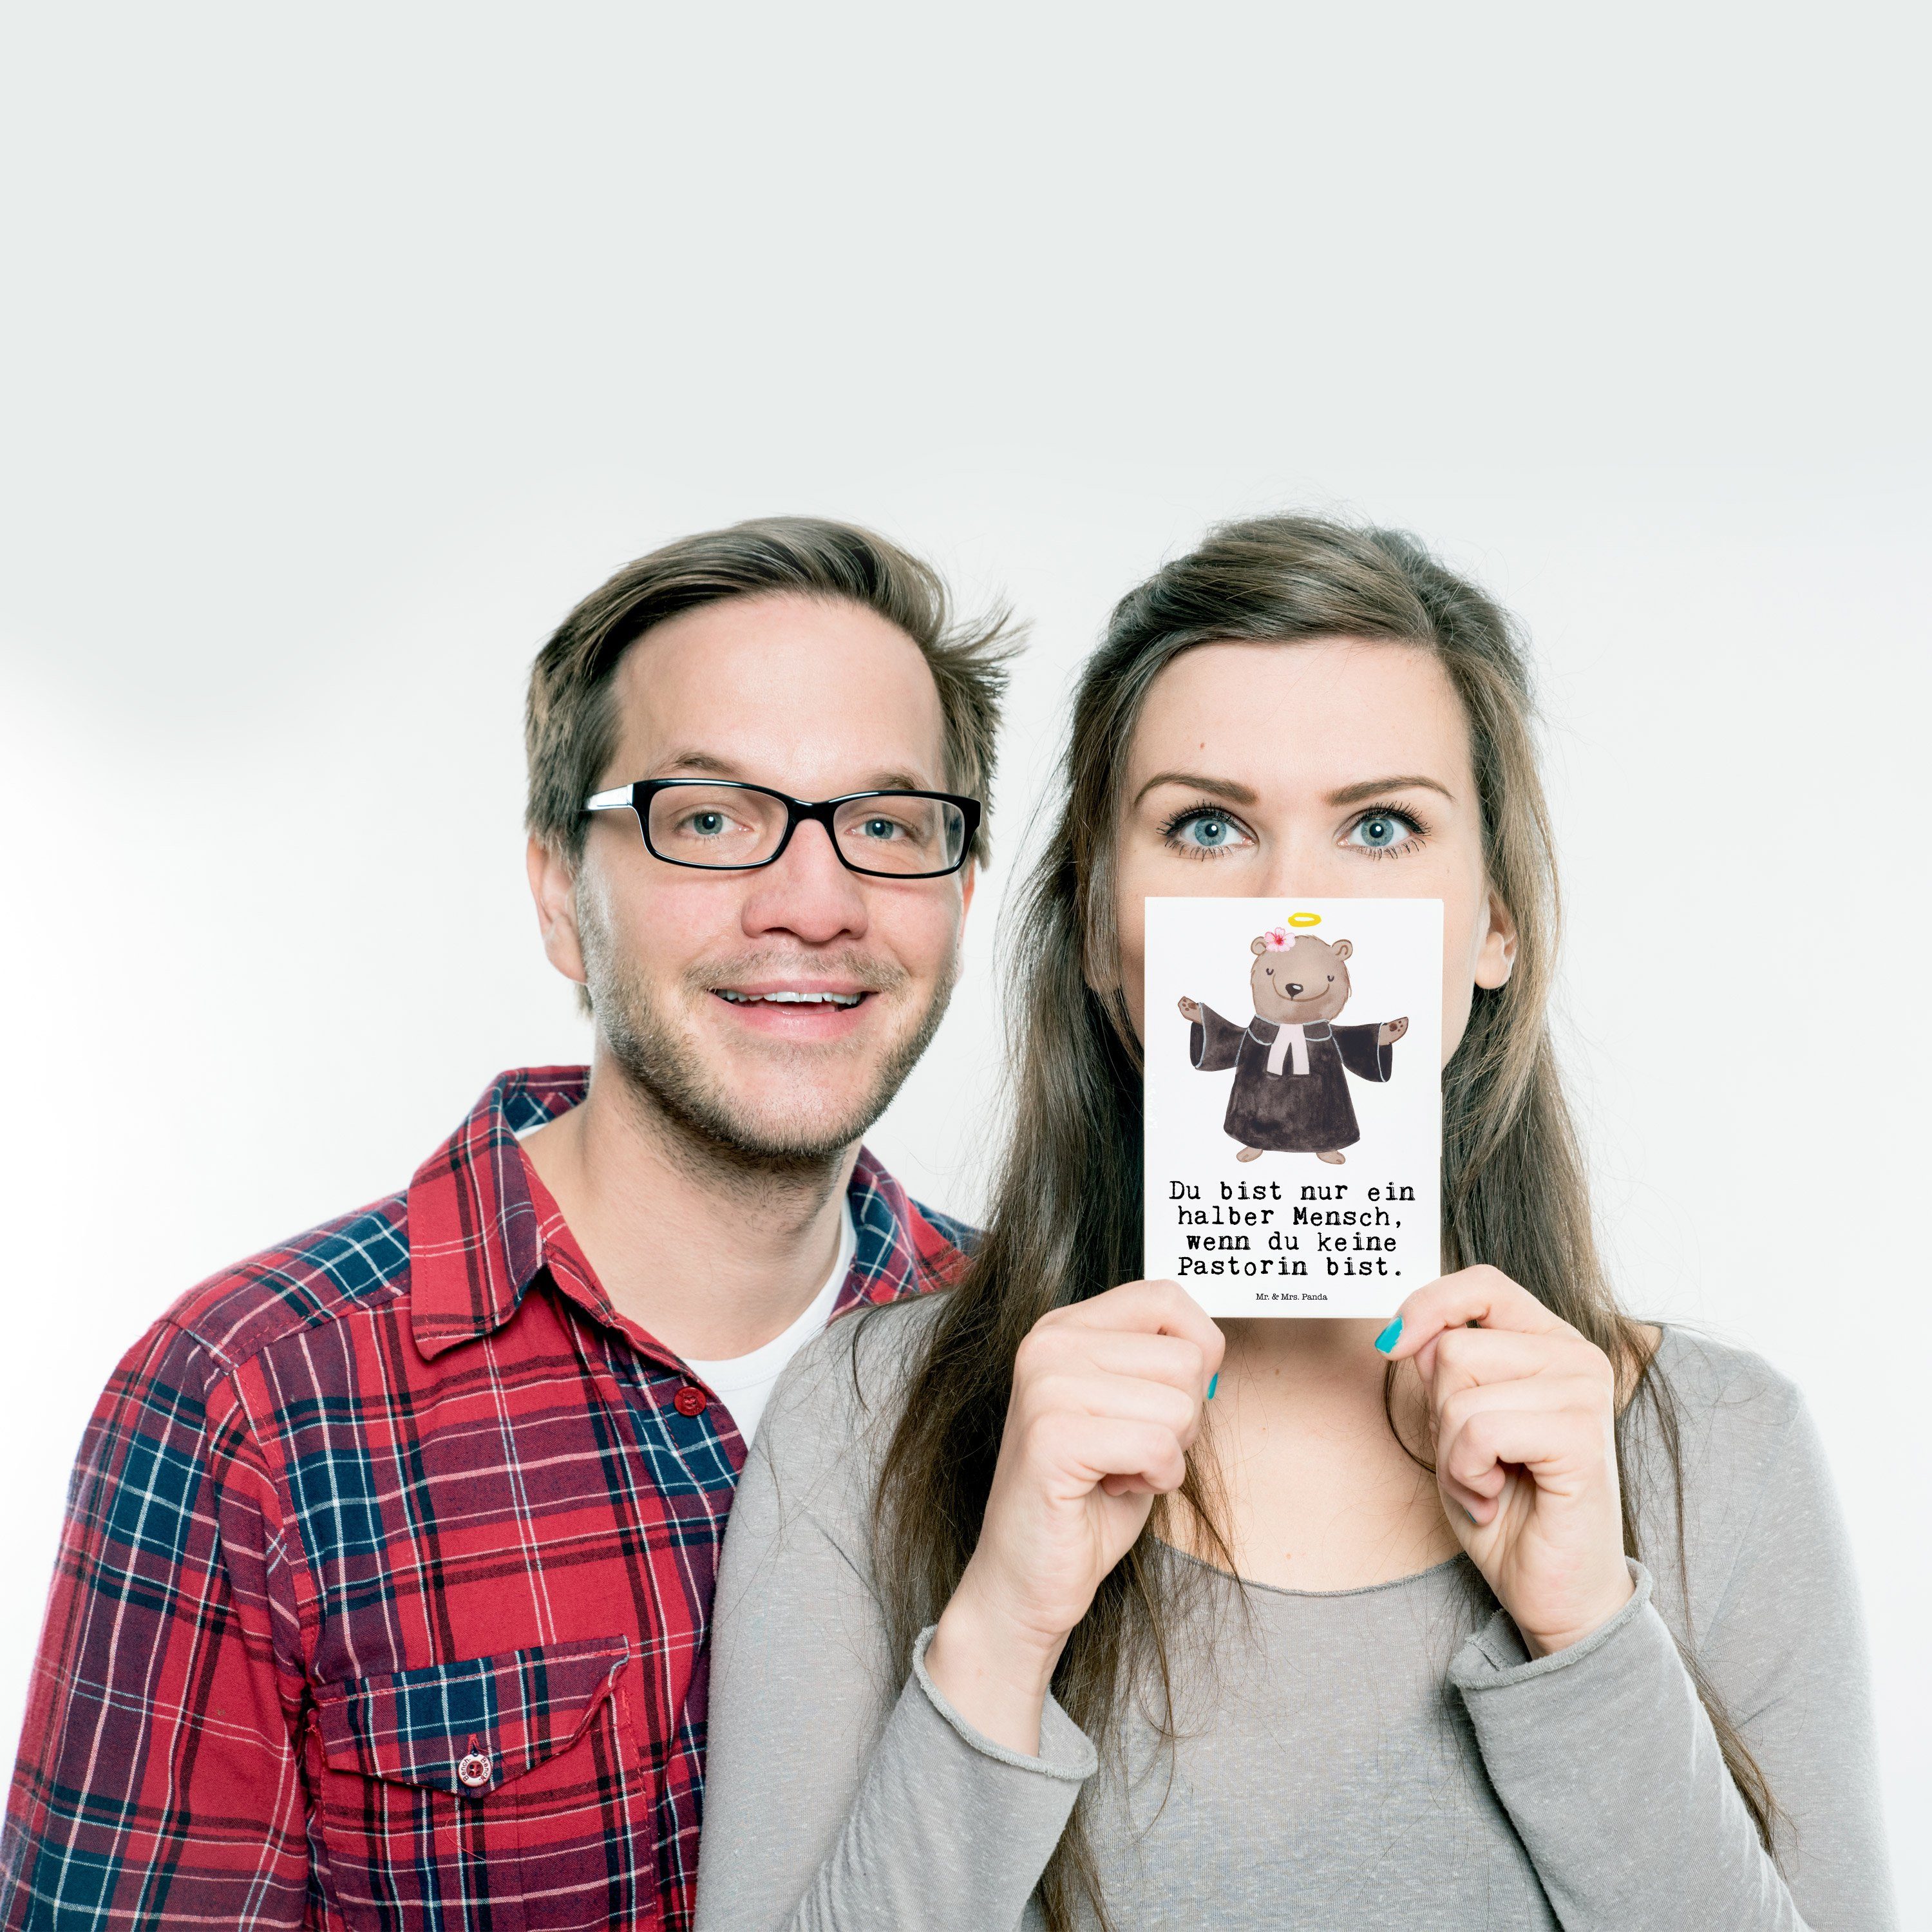 Mr. & Mrs. - Postkarte Arbeitskollege, - Pastorin Panda Ansichtskarte, mit Geschenk, T Weiß Herz